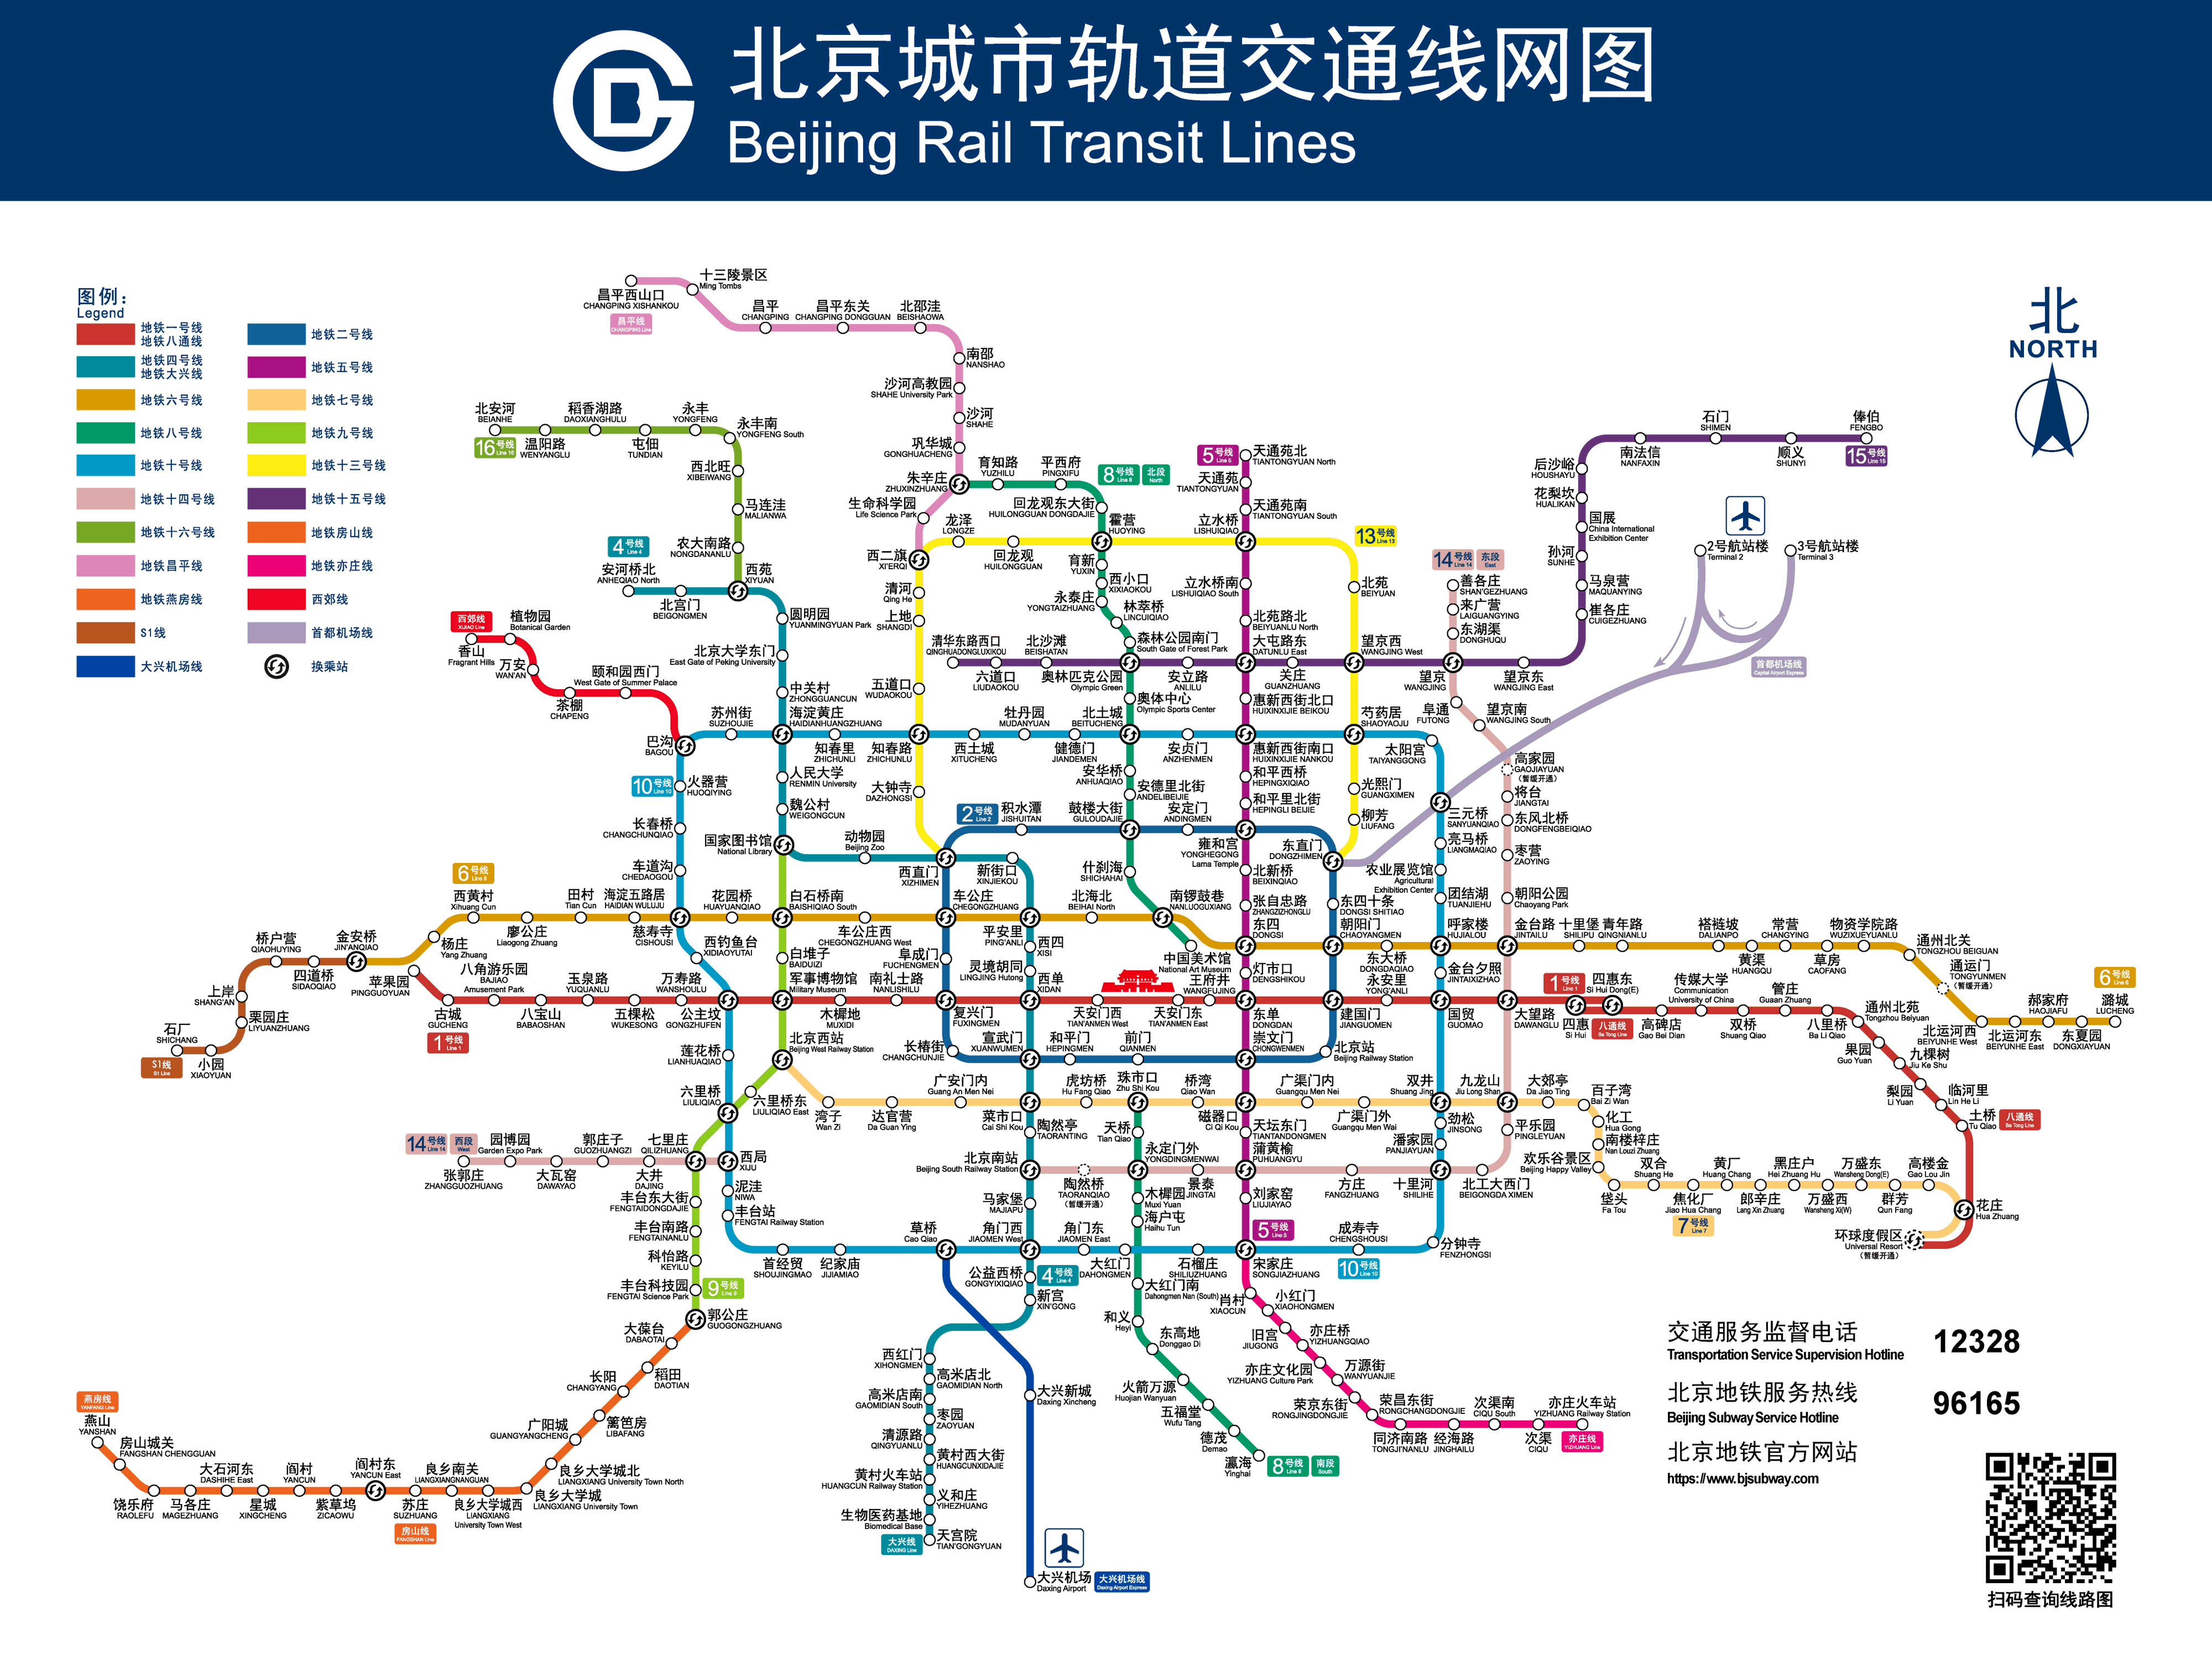 北京地铁12号线下穿京张高铁：最近距离仅1.625米-北京,地铁,12号线,下穿,京张,高铁,隧道 ——快科技(驱动之家旗下媒体)--科技改变未来